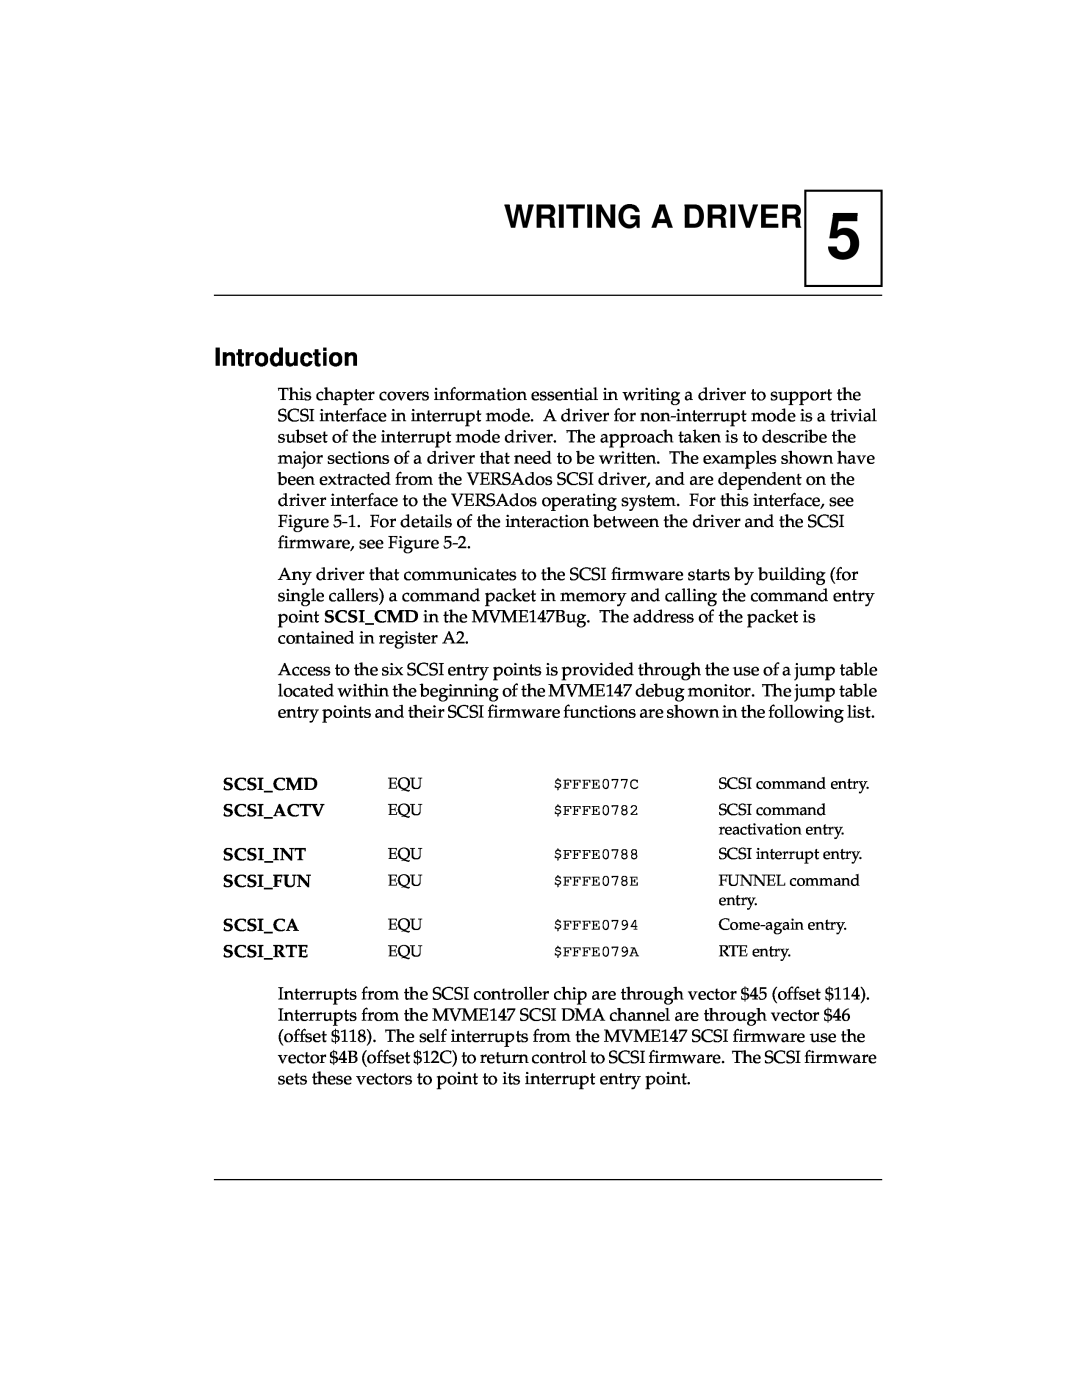 Emerson MVME147 manual Writing A Driver, Scsi_Cmd, Scsi Actv, Scsi_Int, Scsi_Fun, Scsi_Ca, Scsi_Rte, Introduction 